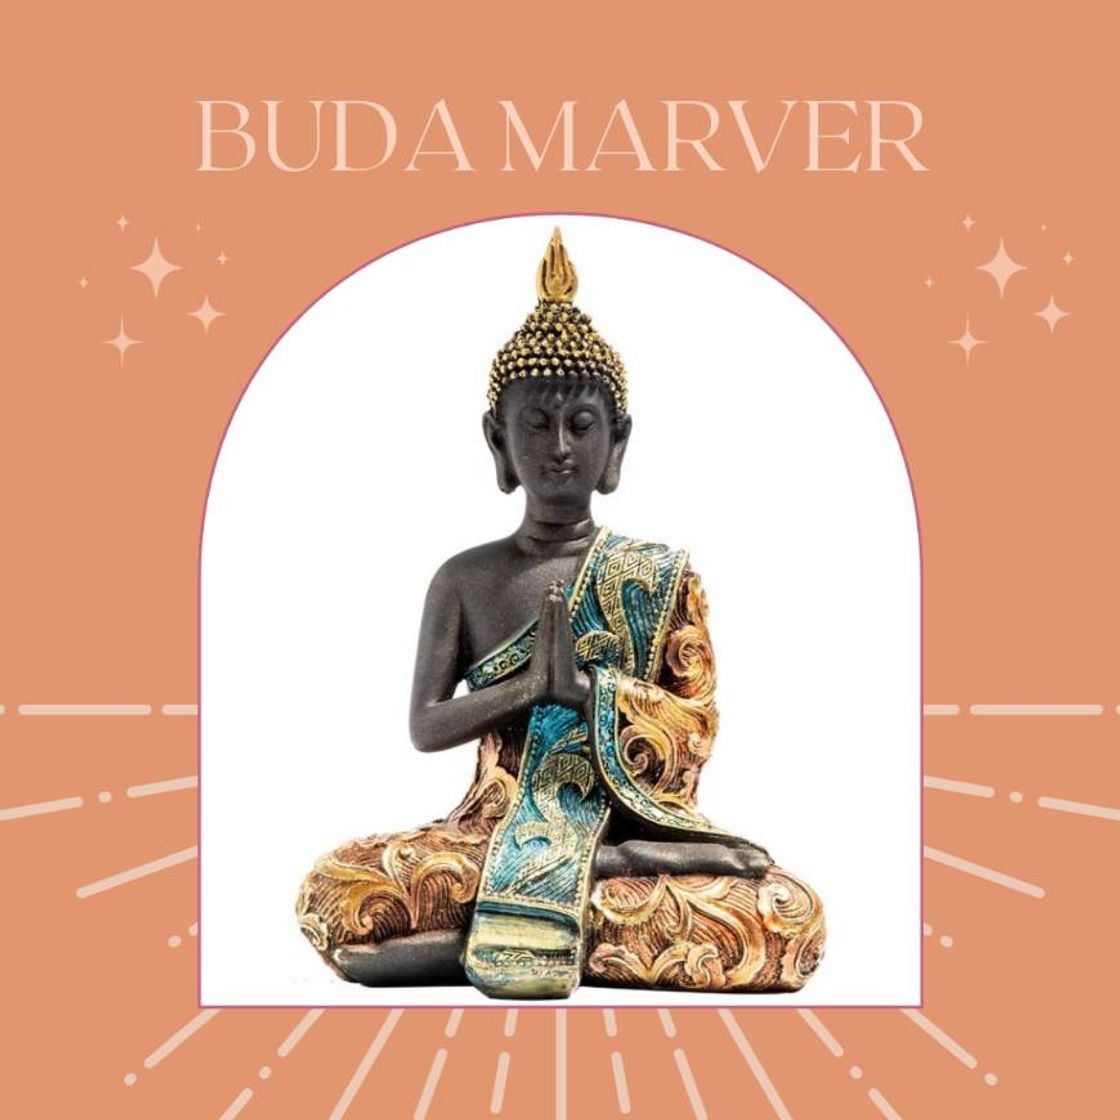 Buda Marver